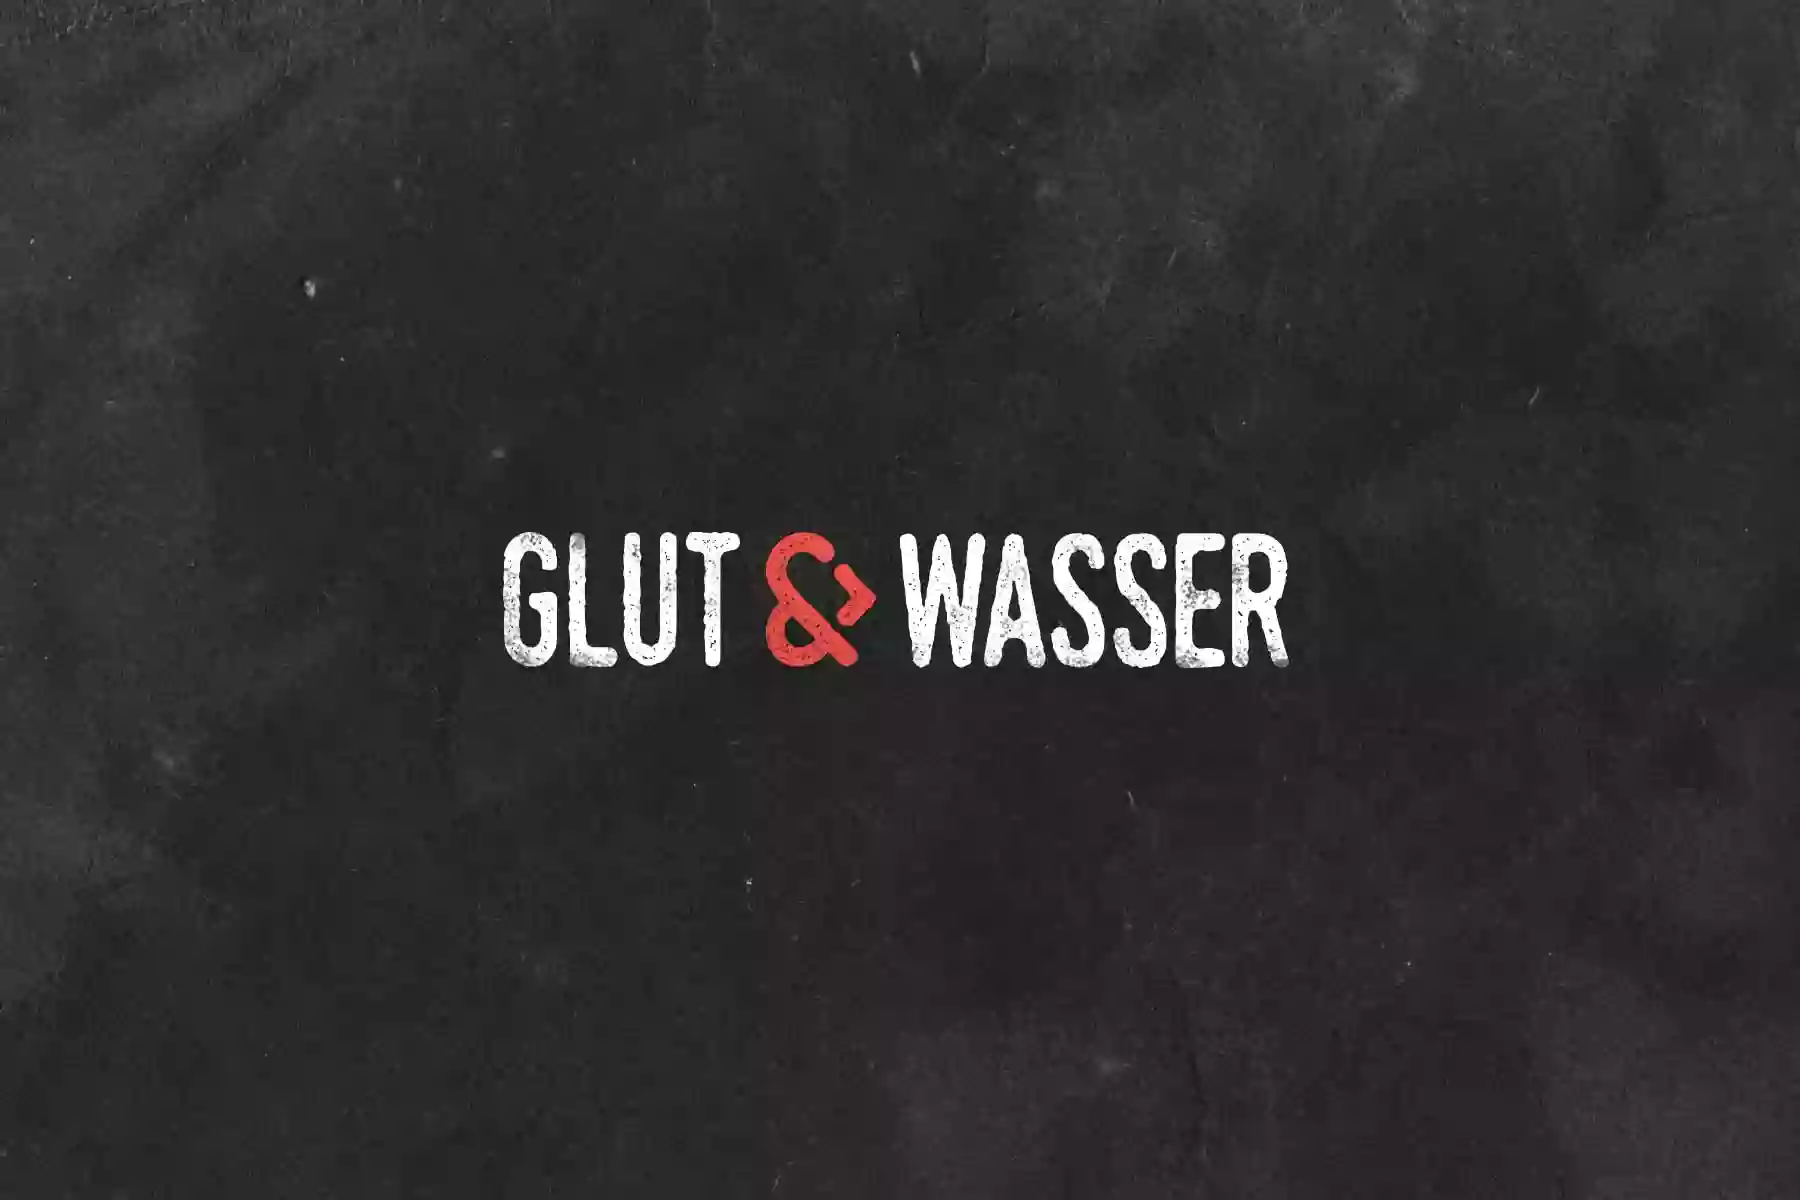 Glut & Wasser